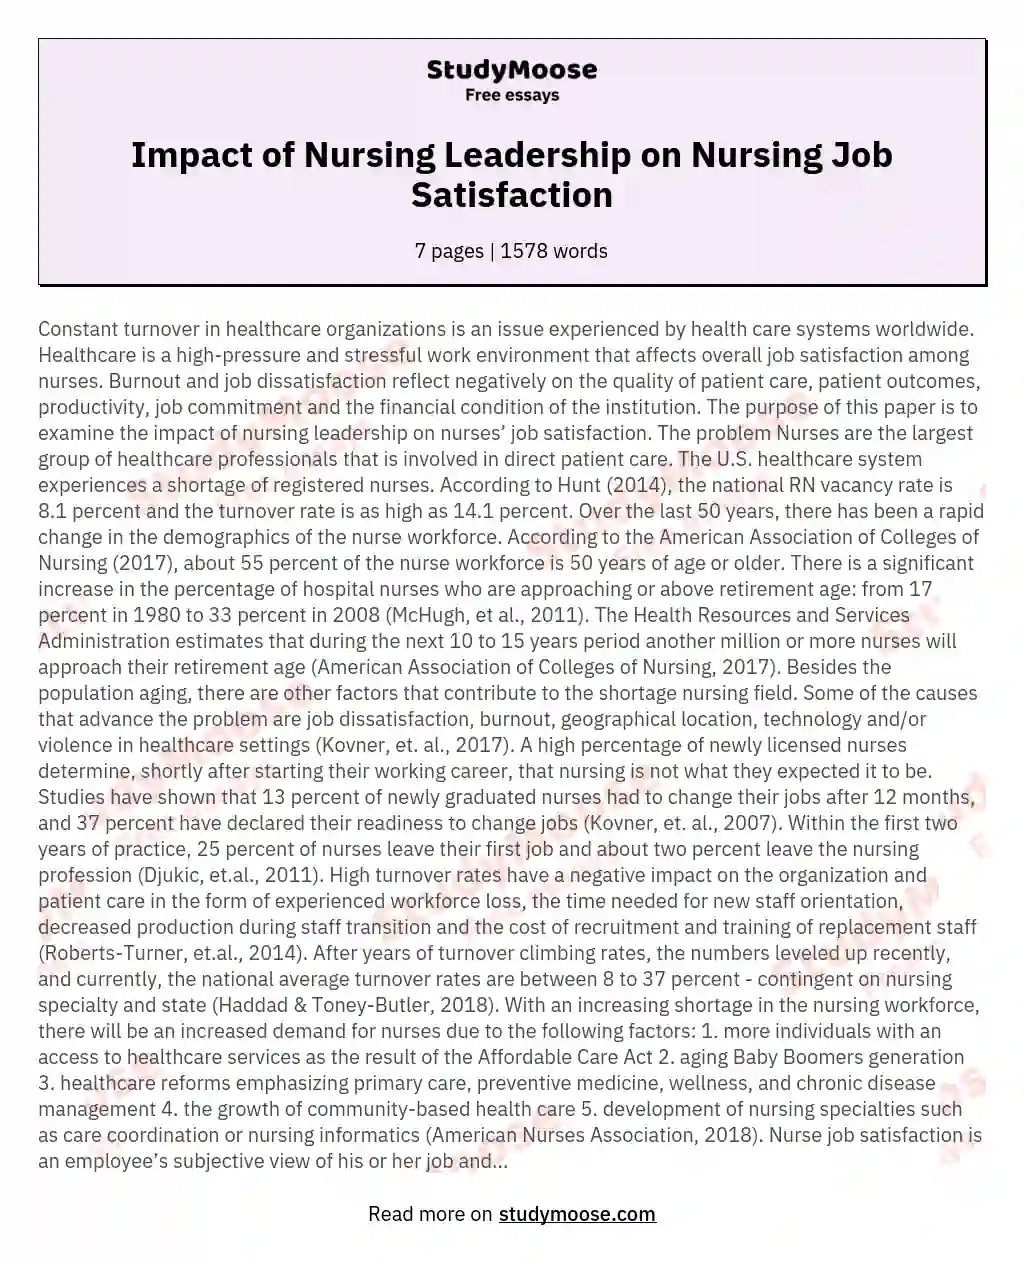 Impact of Nursing Leadership on Nursing Job Satisfaction